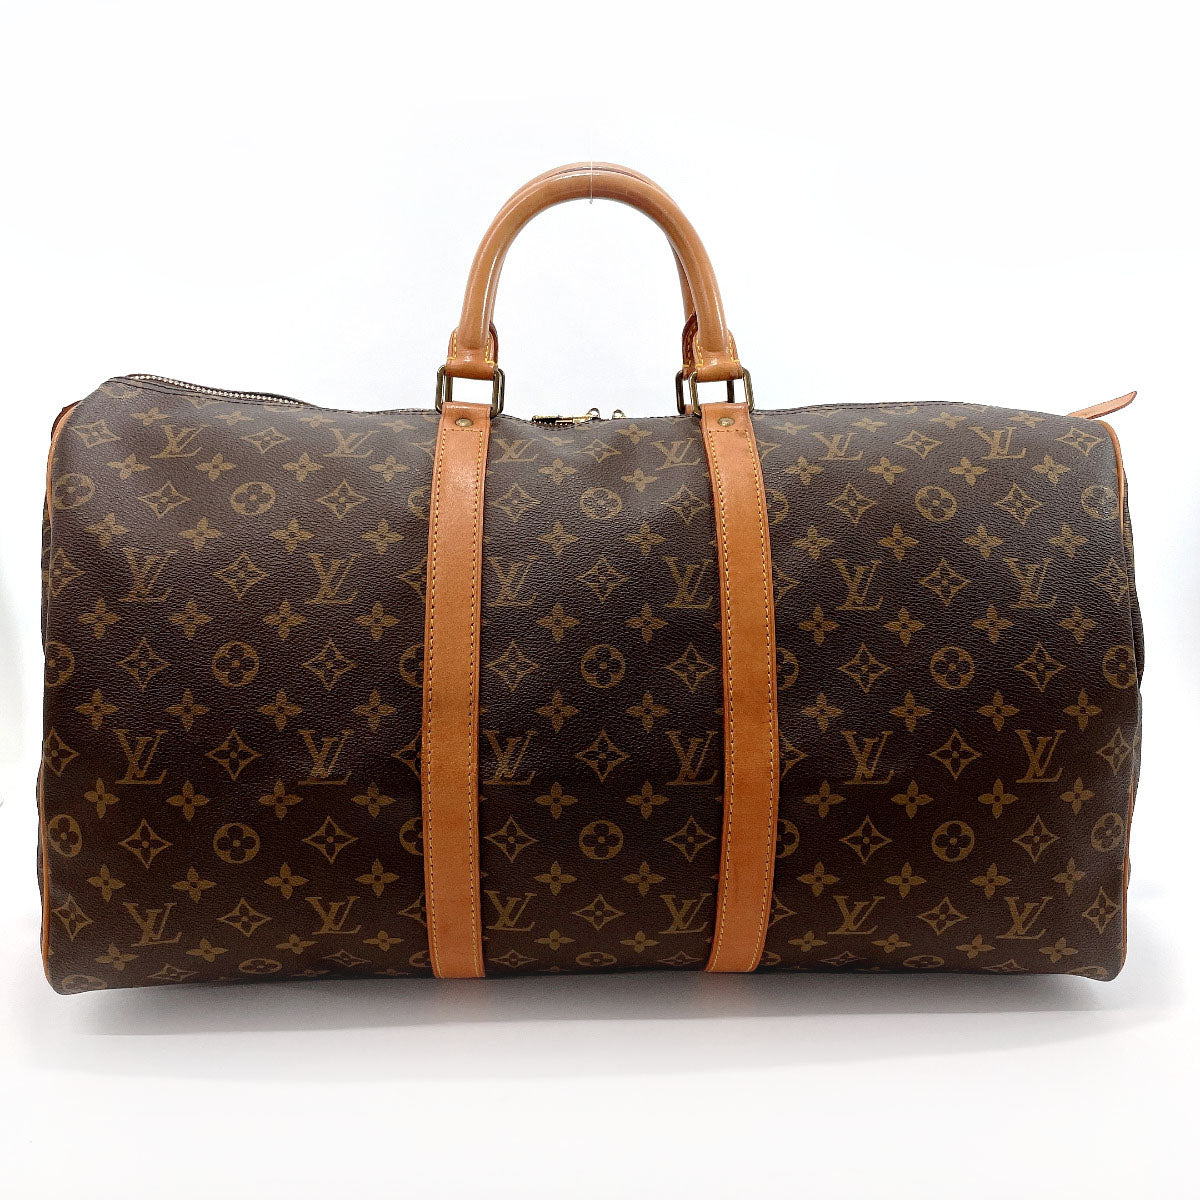 Louis_Vuitton Keepall Duffle Bag, Size: Zero Size